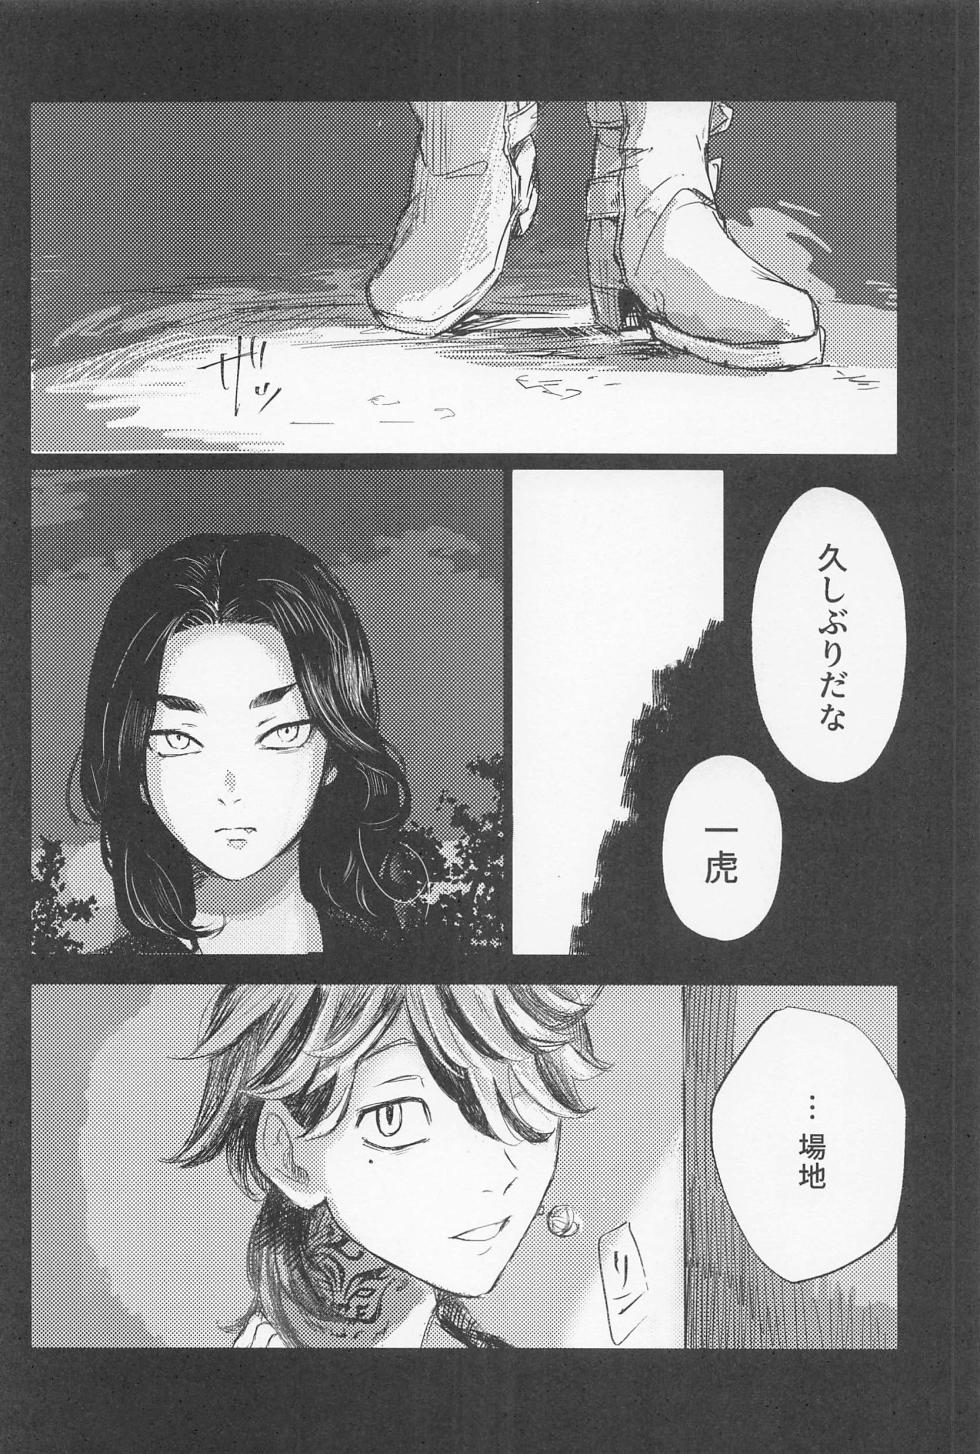 [aihanai] kazutorashusshoshitatteyo (tokyo卍ribenjazu) - Page 3